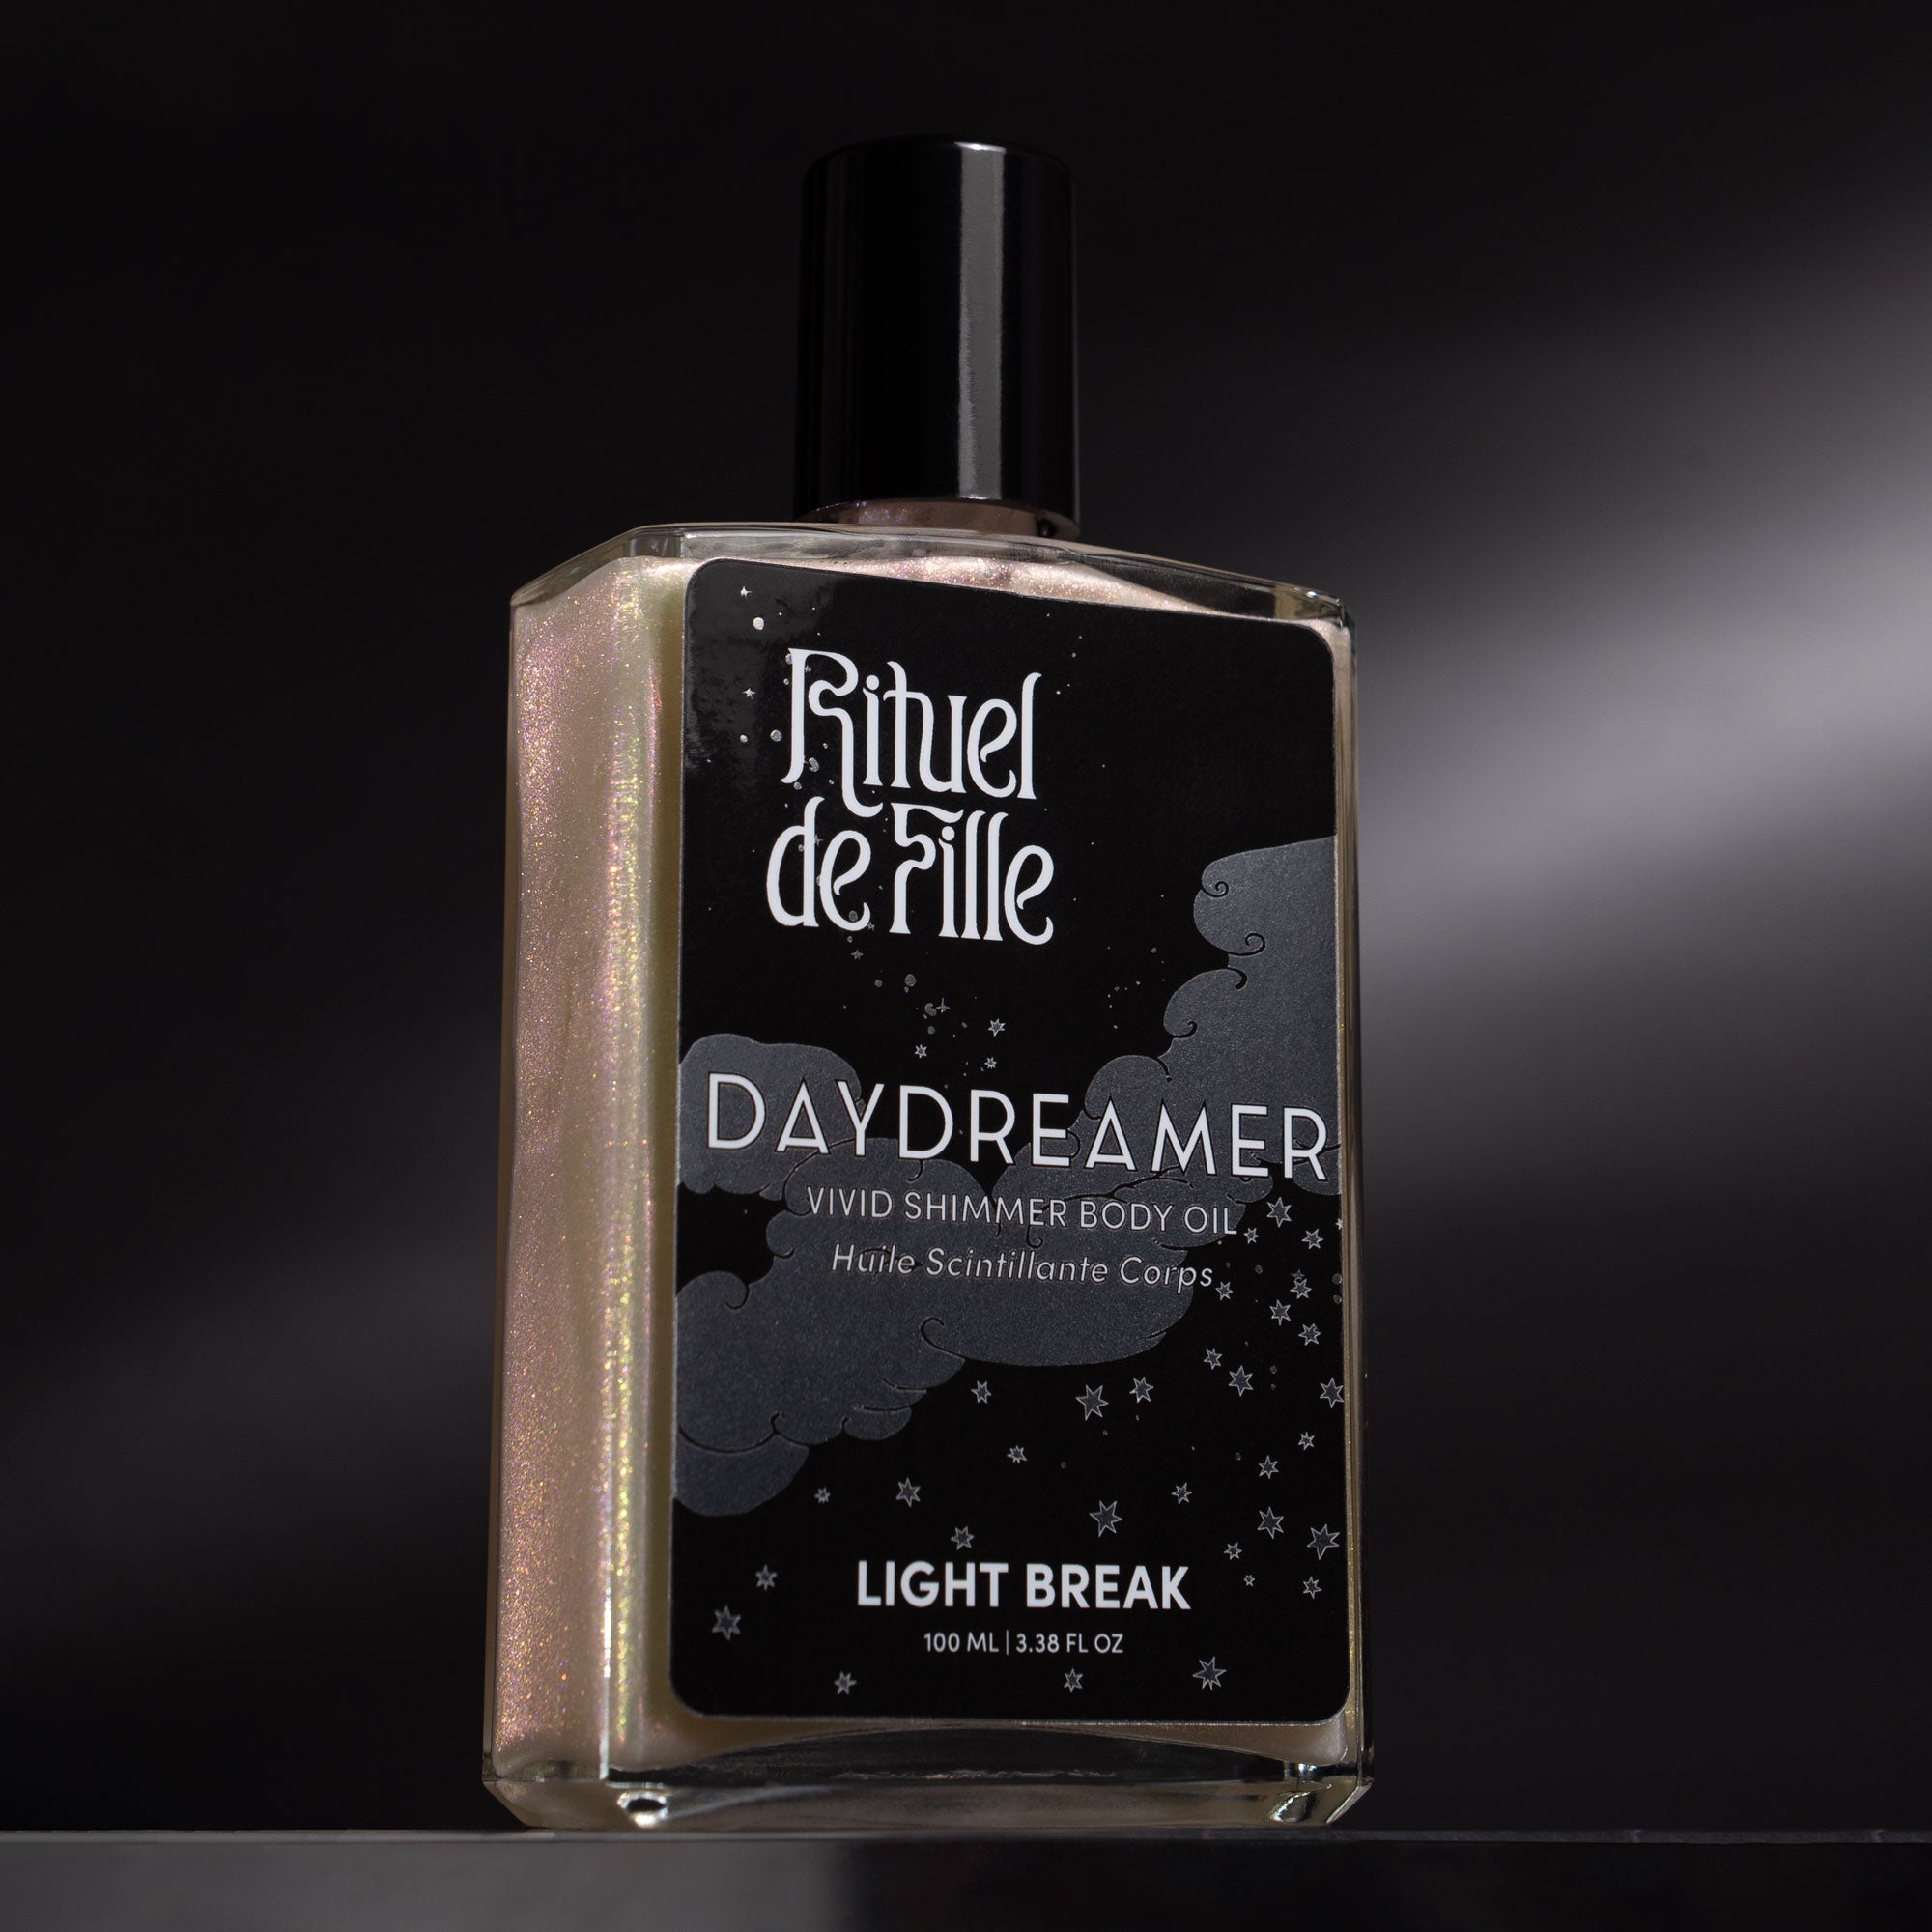 Light Break | Daydreamer Body Oil - Rituel de Fille